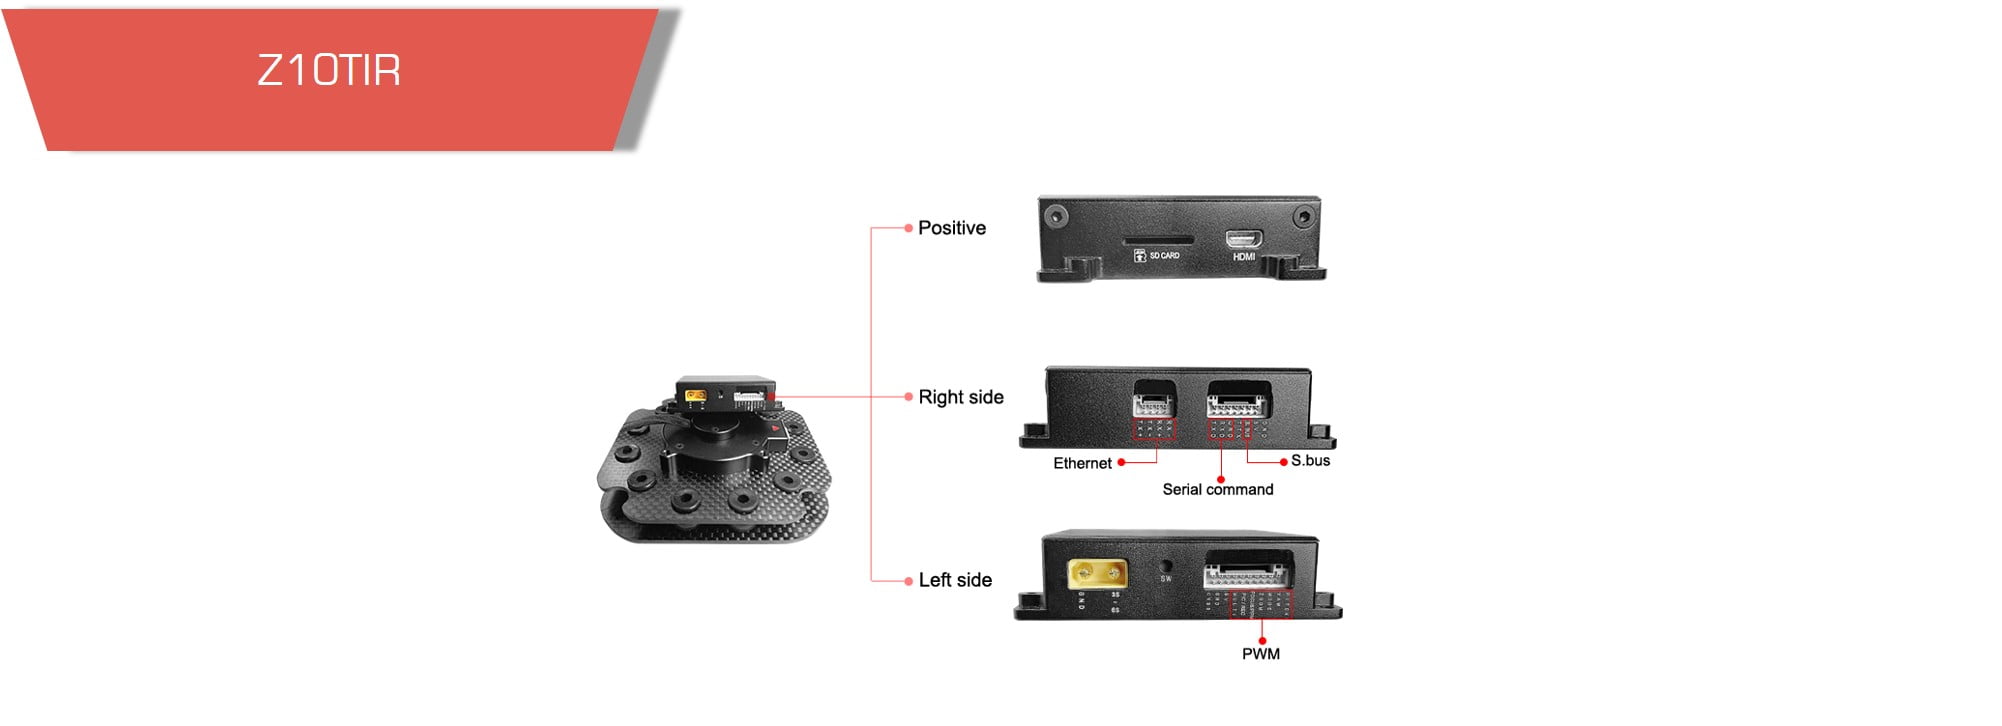 Z10tir6 - gimbal z10tir,dual sensor,thermal gimbal camera,thermal camera - motionew - 11